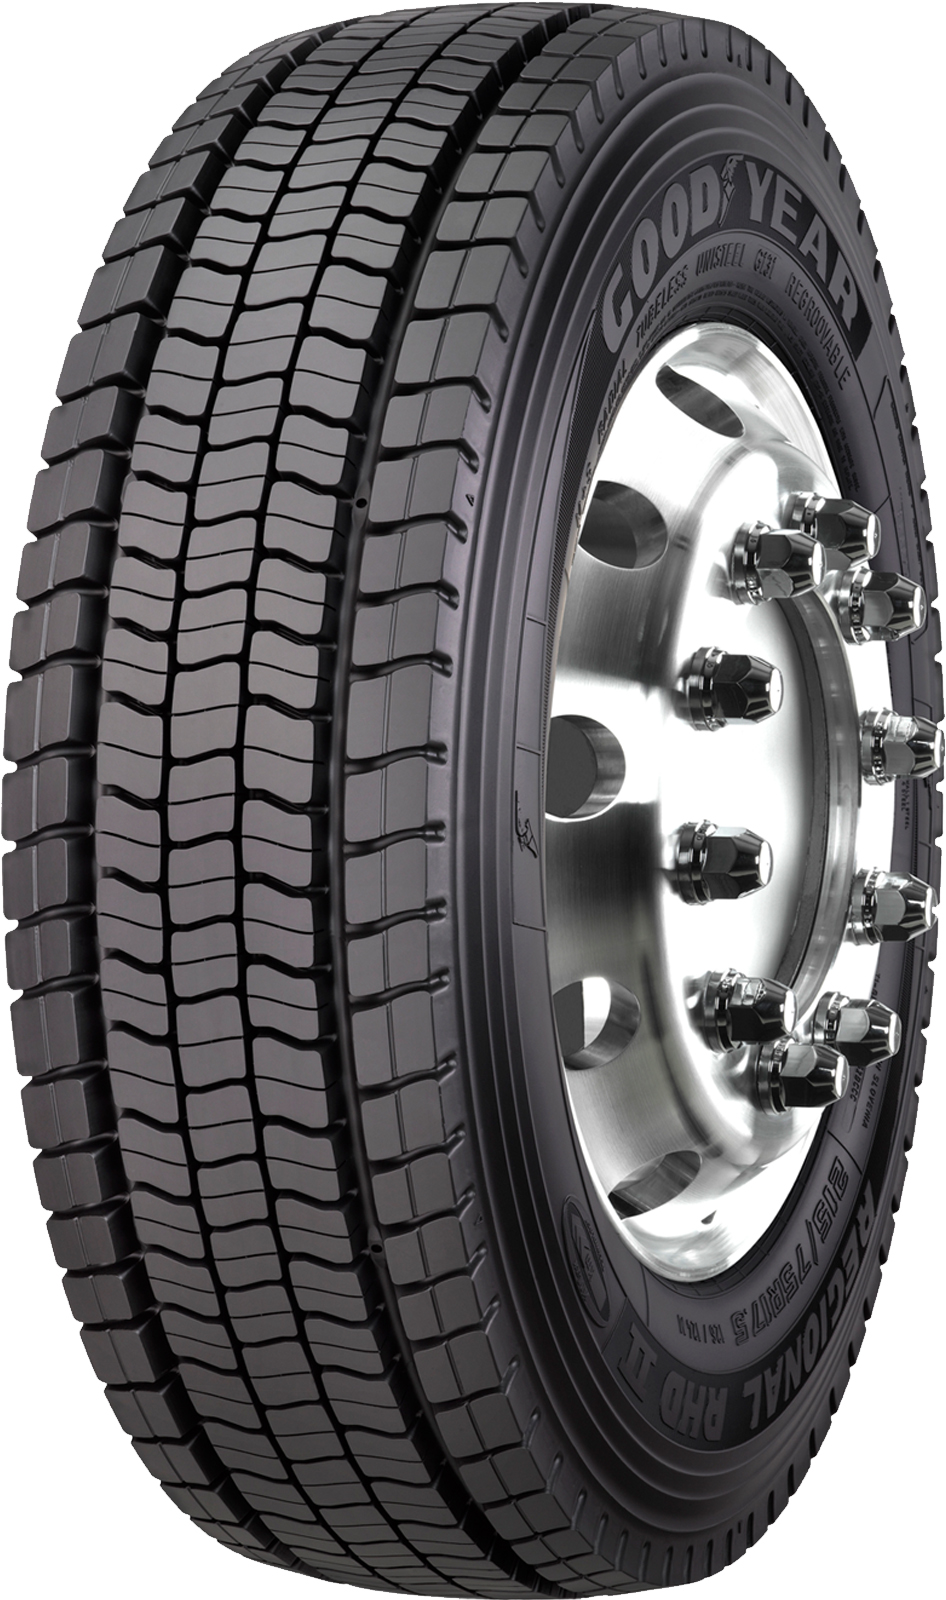 product_type-heavy_tires GOODYEAR REG. RHD II 235/75 R17.5 132M